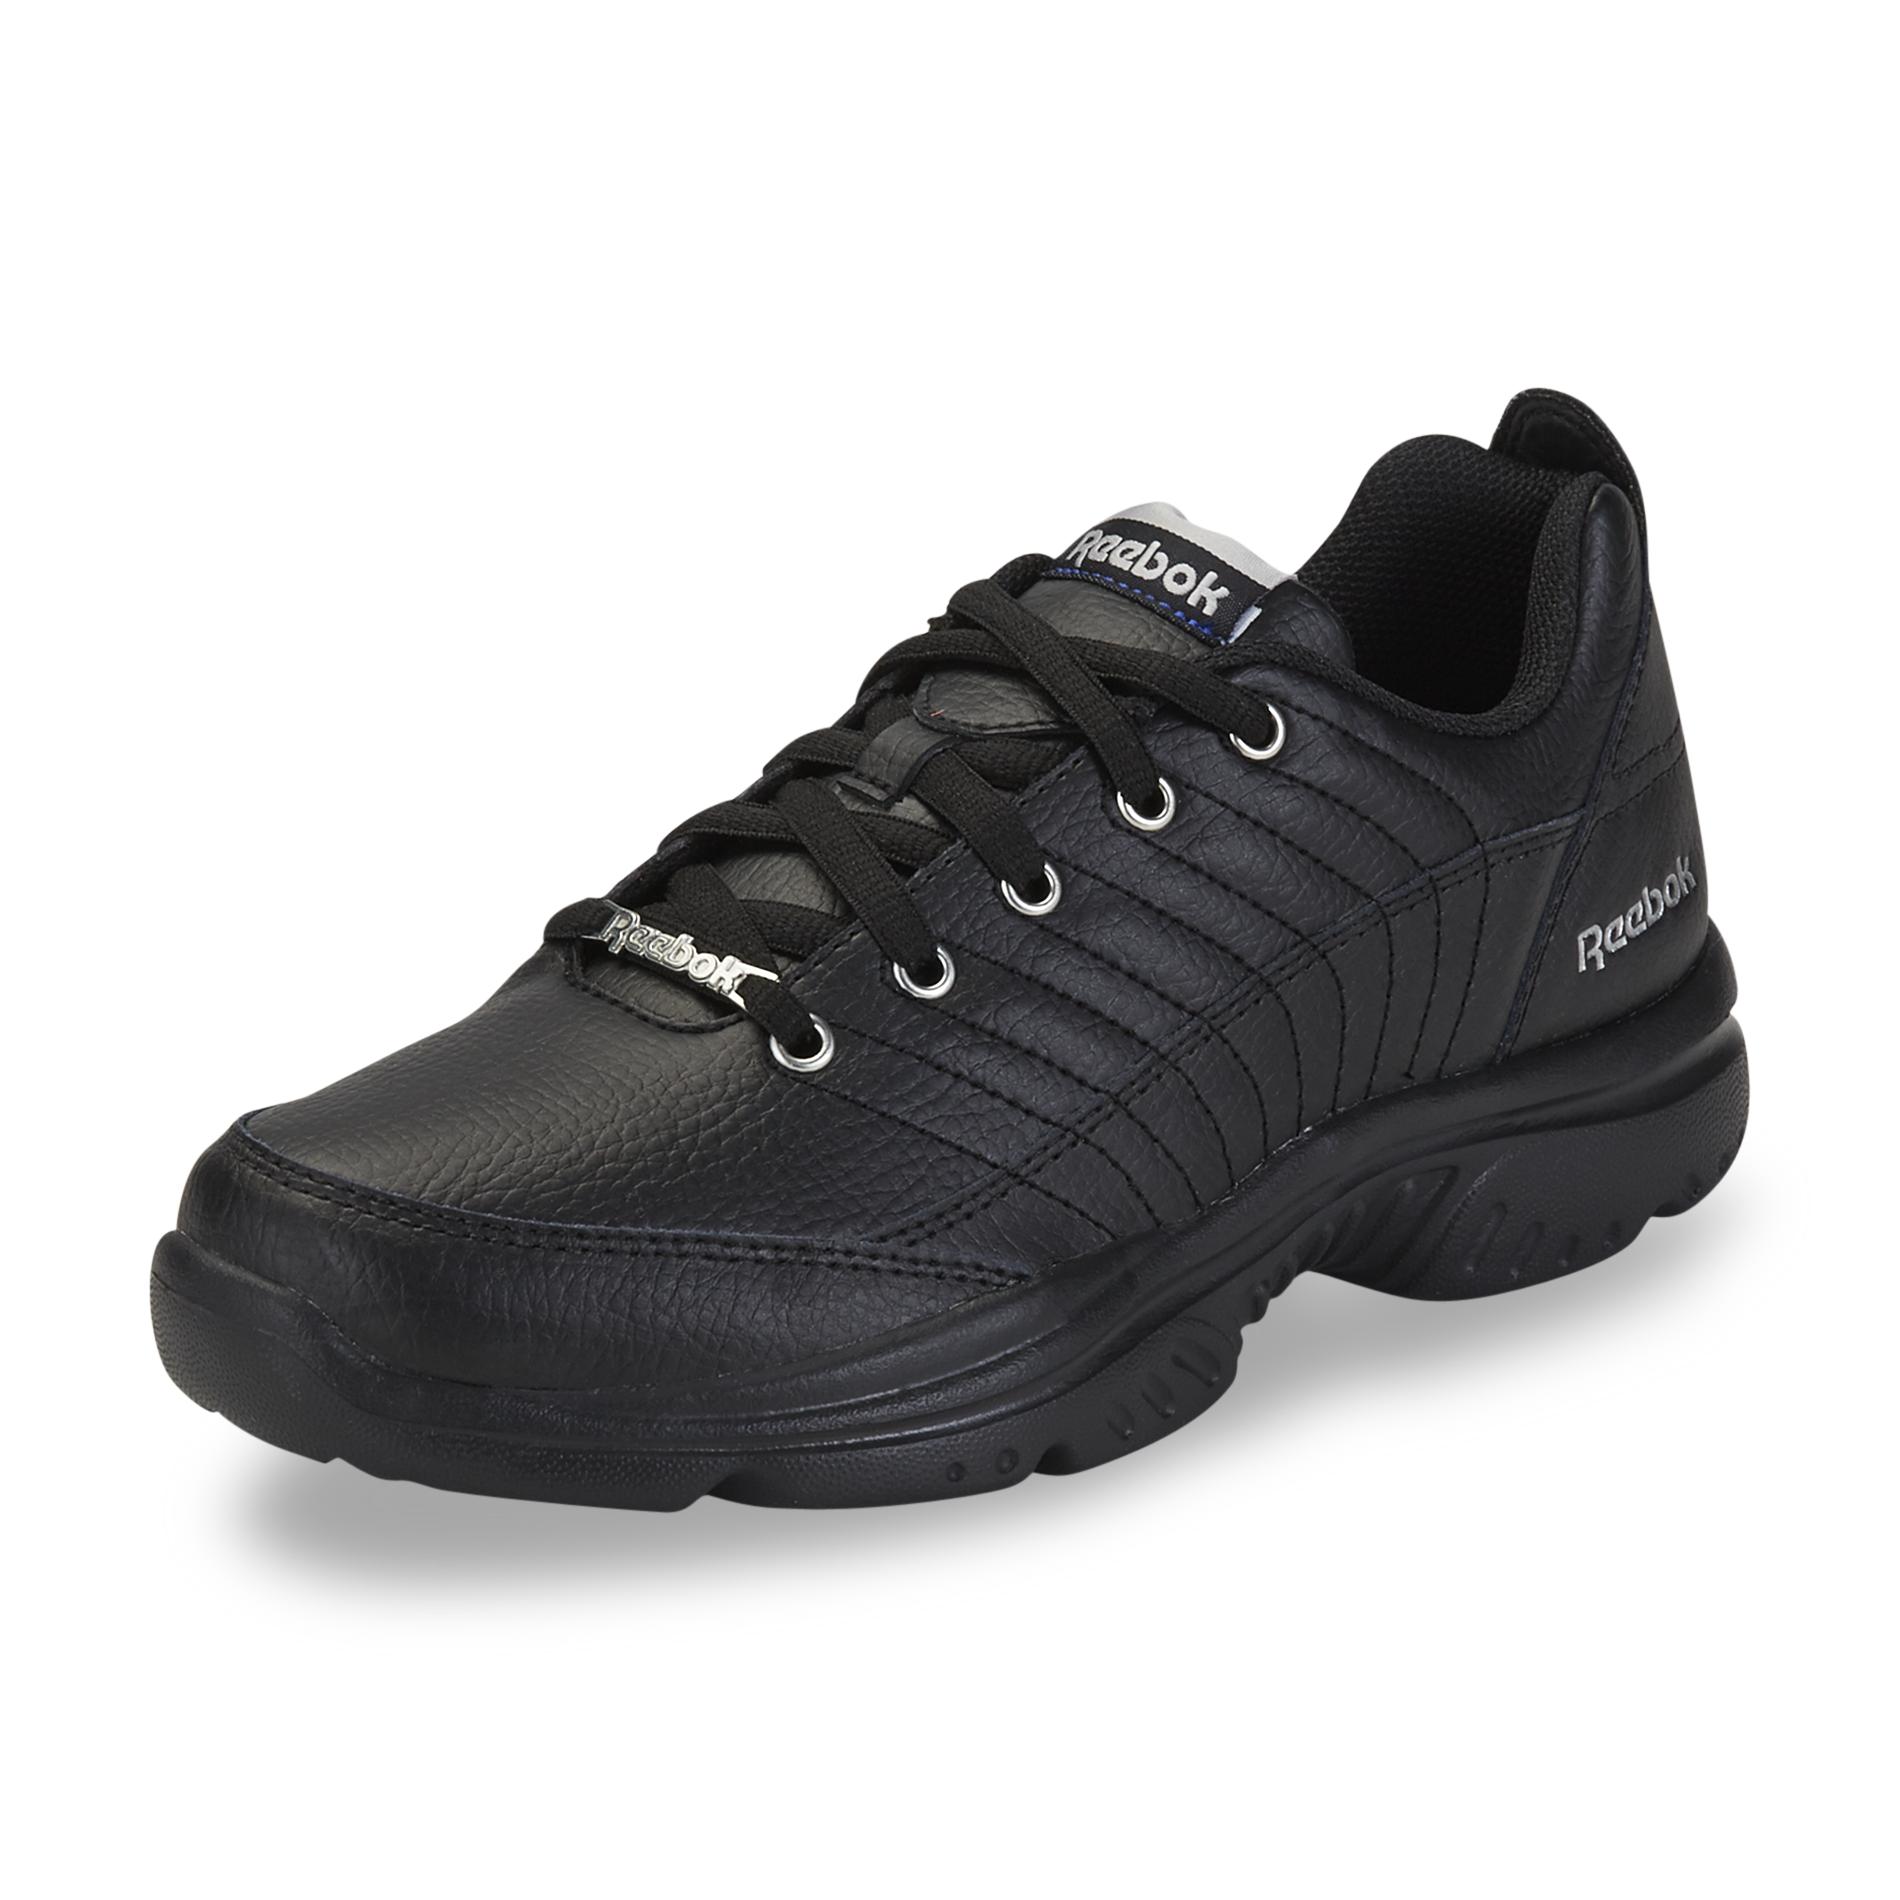 Reebok Women's Royal Lumina OrthoLite Black Athletic Shoe